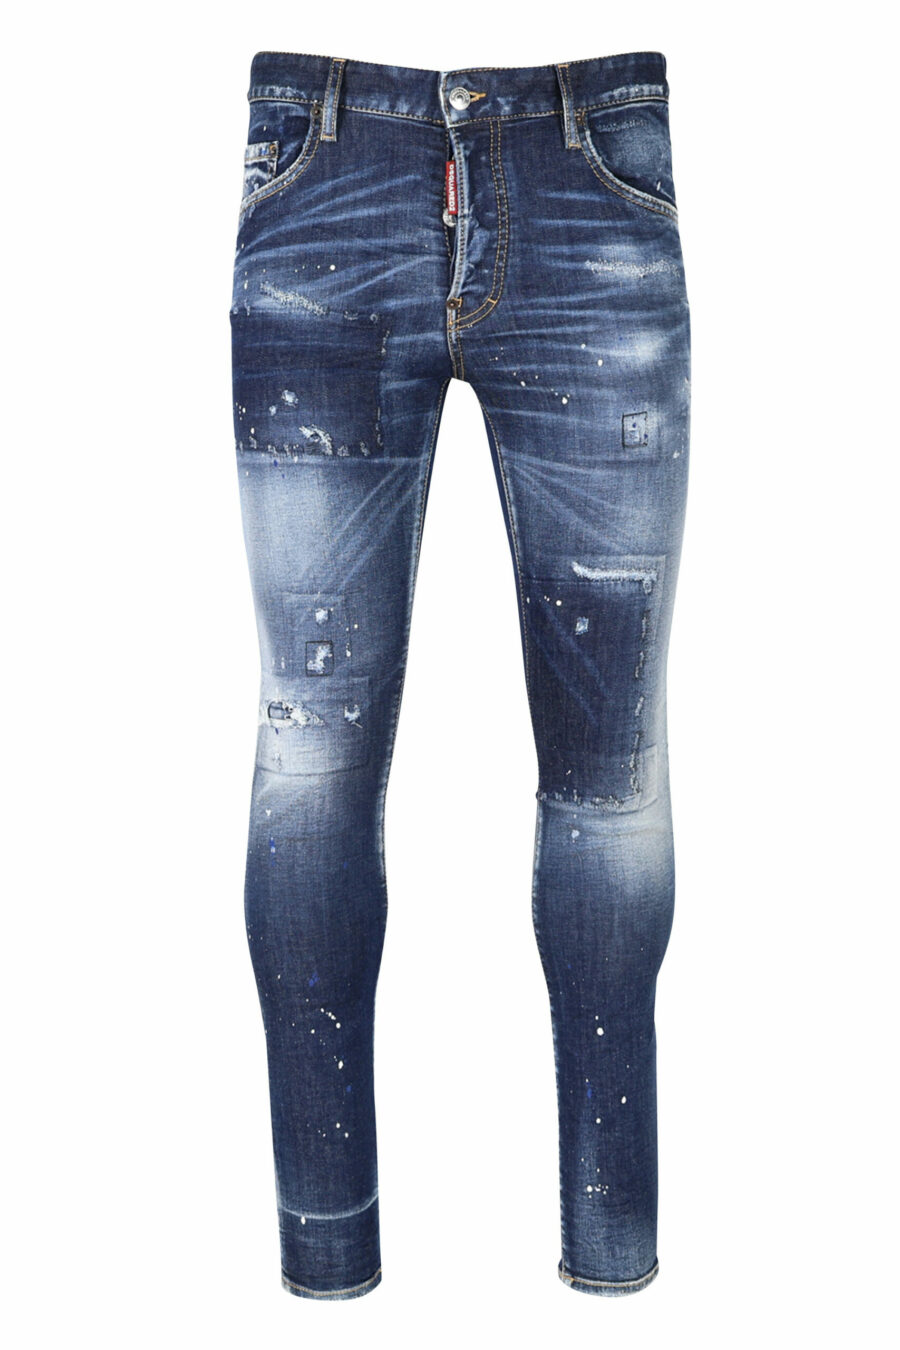 Jean bleu "super twinky jean" avec patch et effiloché - 8054148104863 écaillé